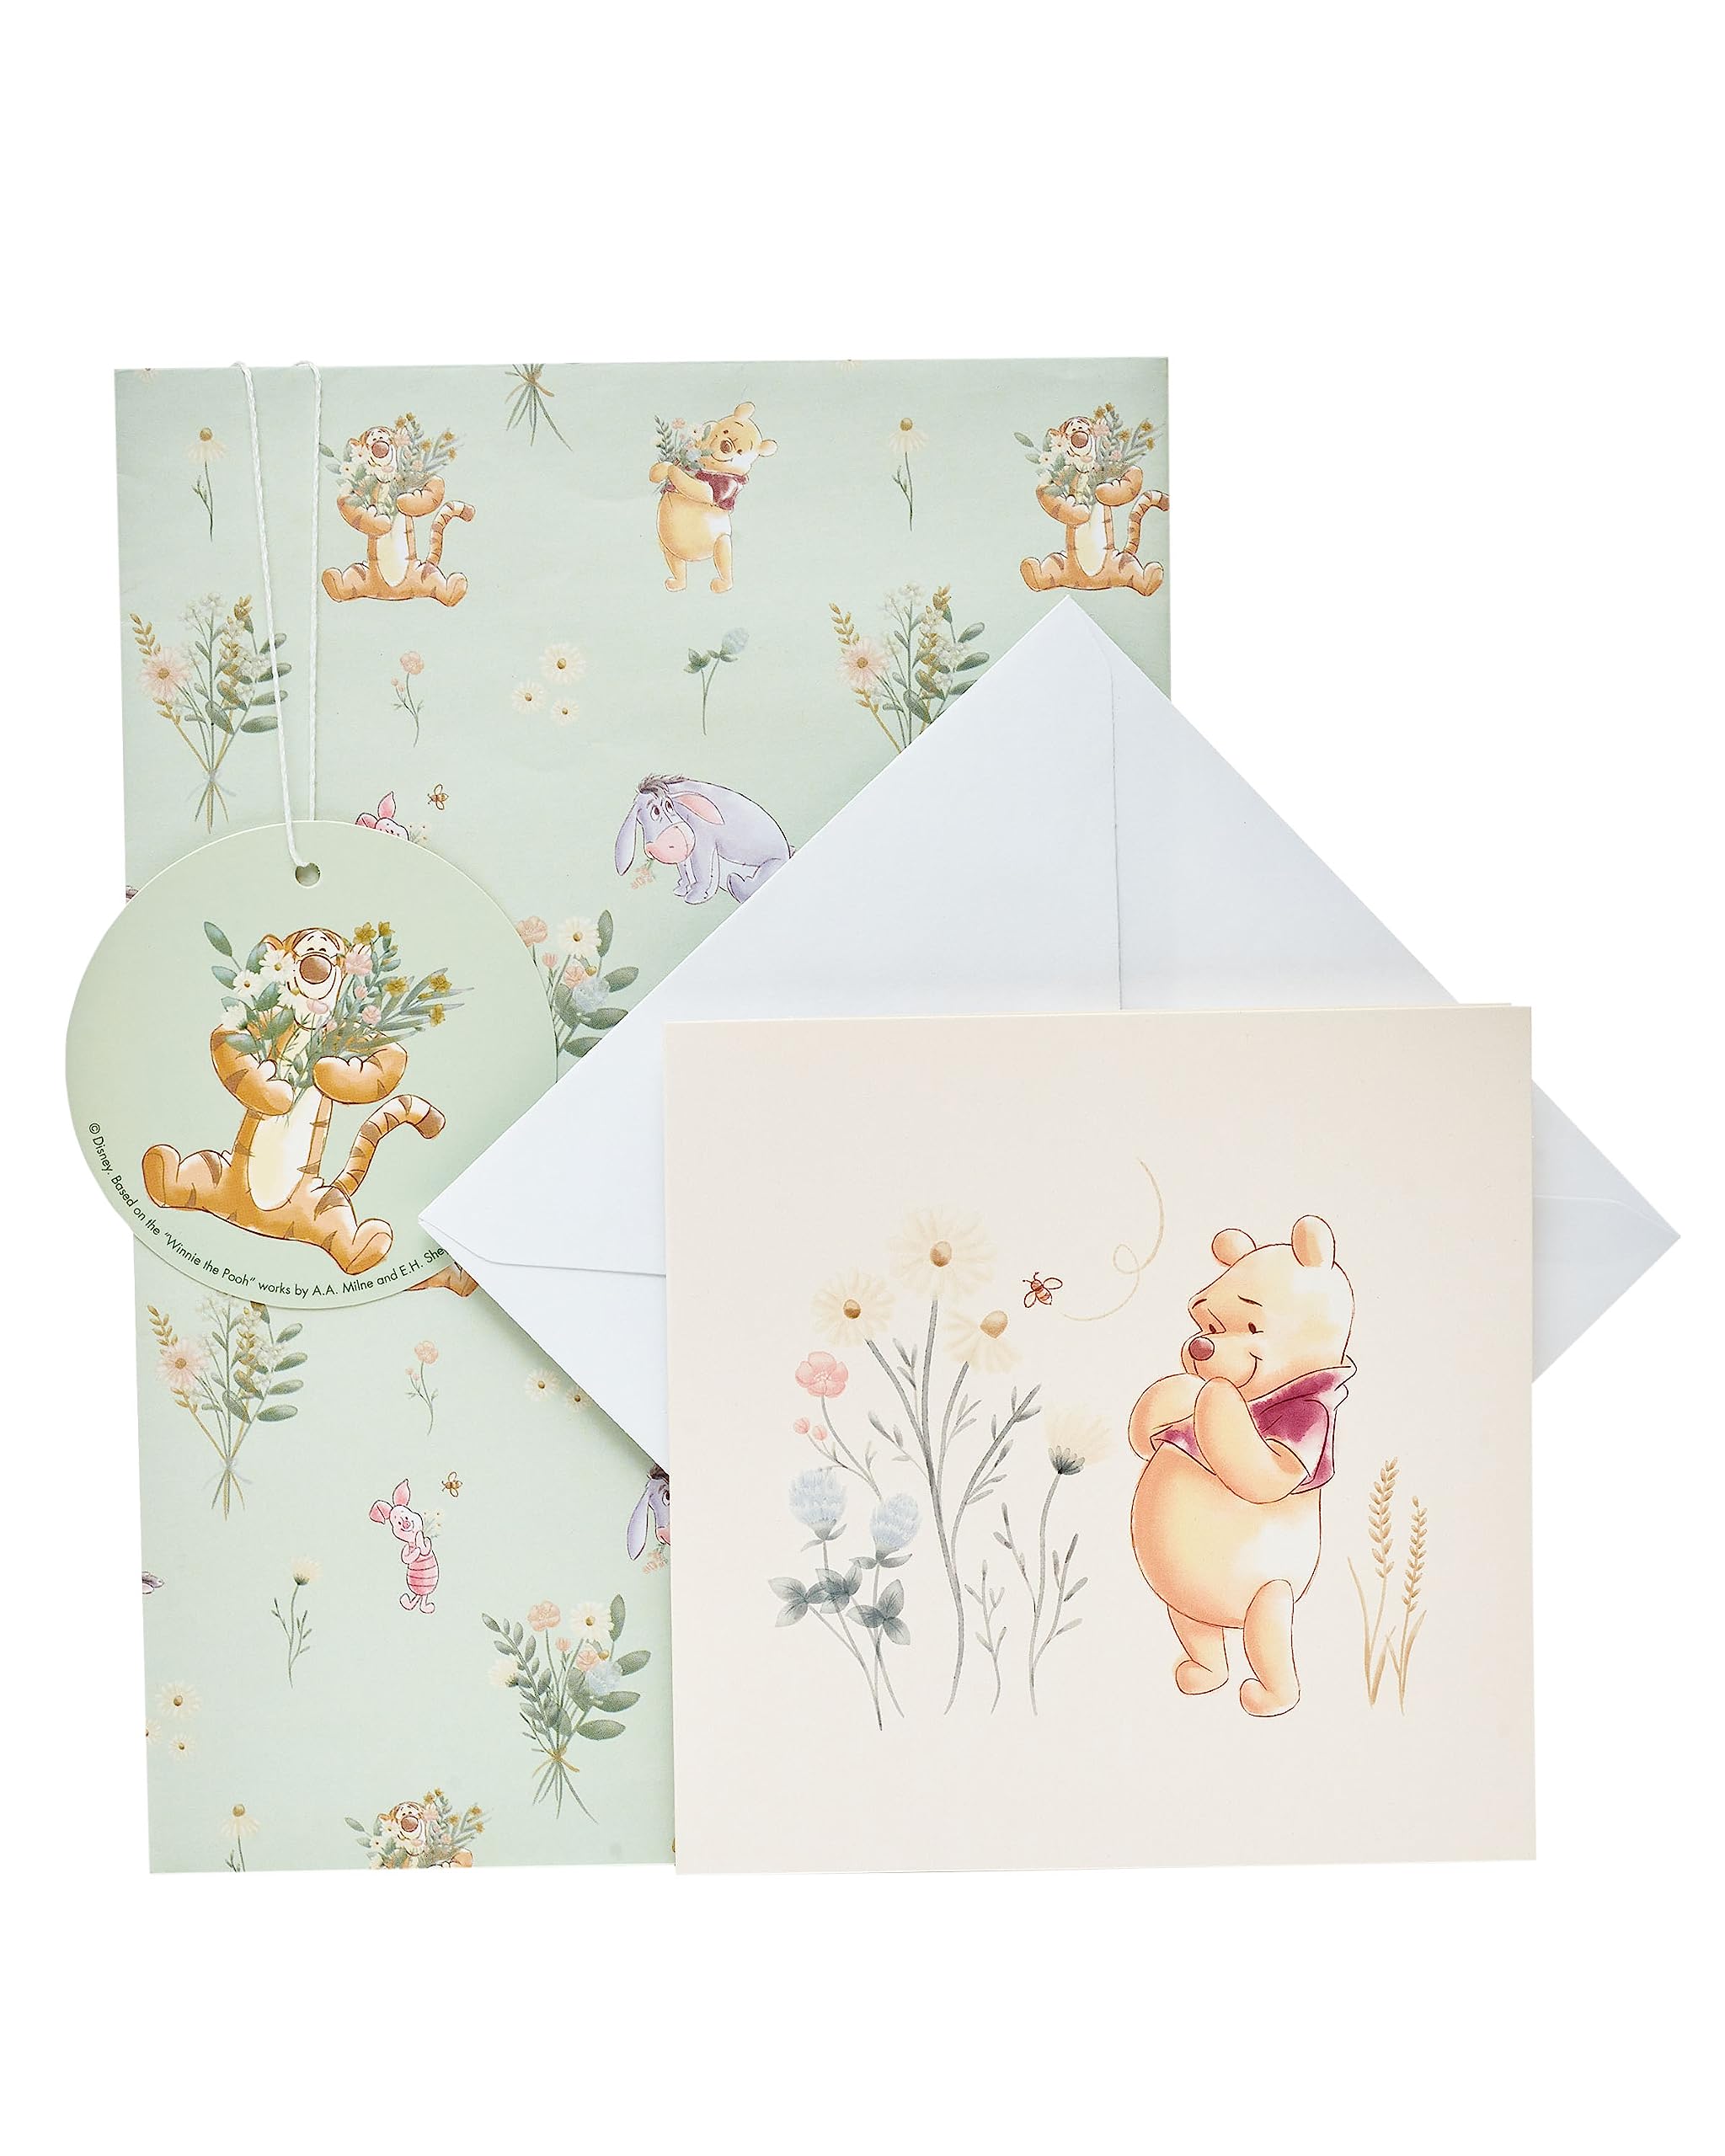 UK Greetings Disney Wrap, Card and Tag Pack - Winnie the Pooh Packaged Wrap - Winnie the Pooh Greeting Card - Disney Gifting Bundle - Winnie the Pooh Gifting Bundle, Multi (688967-0-1)